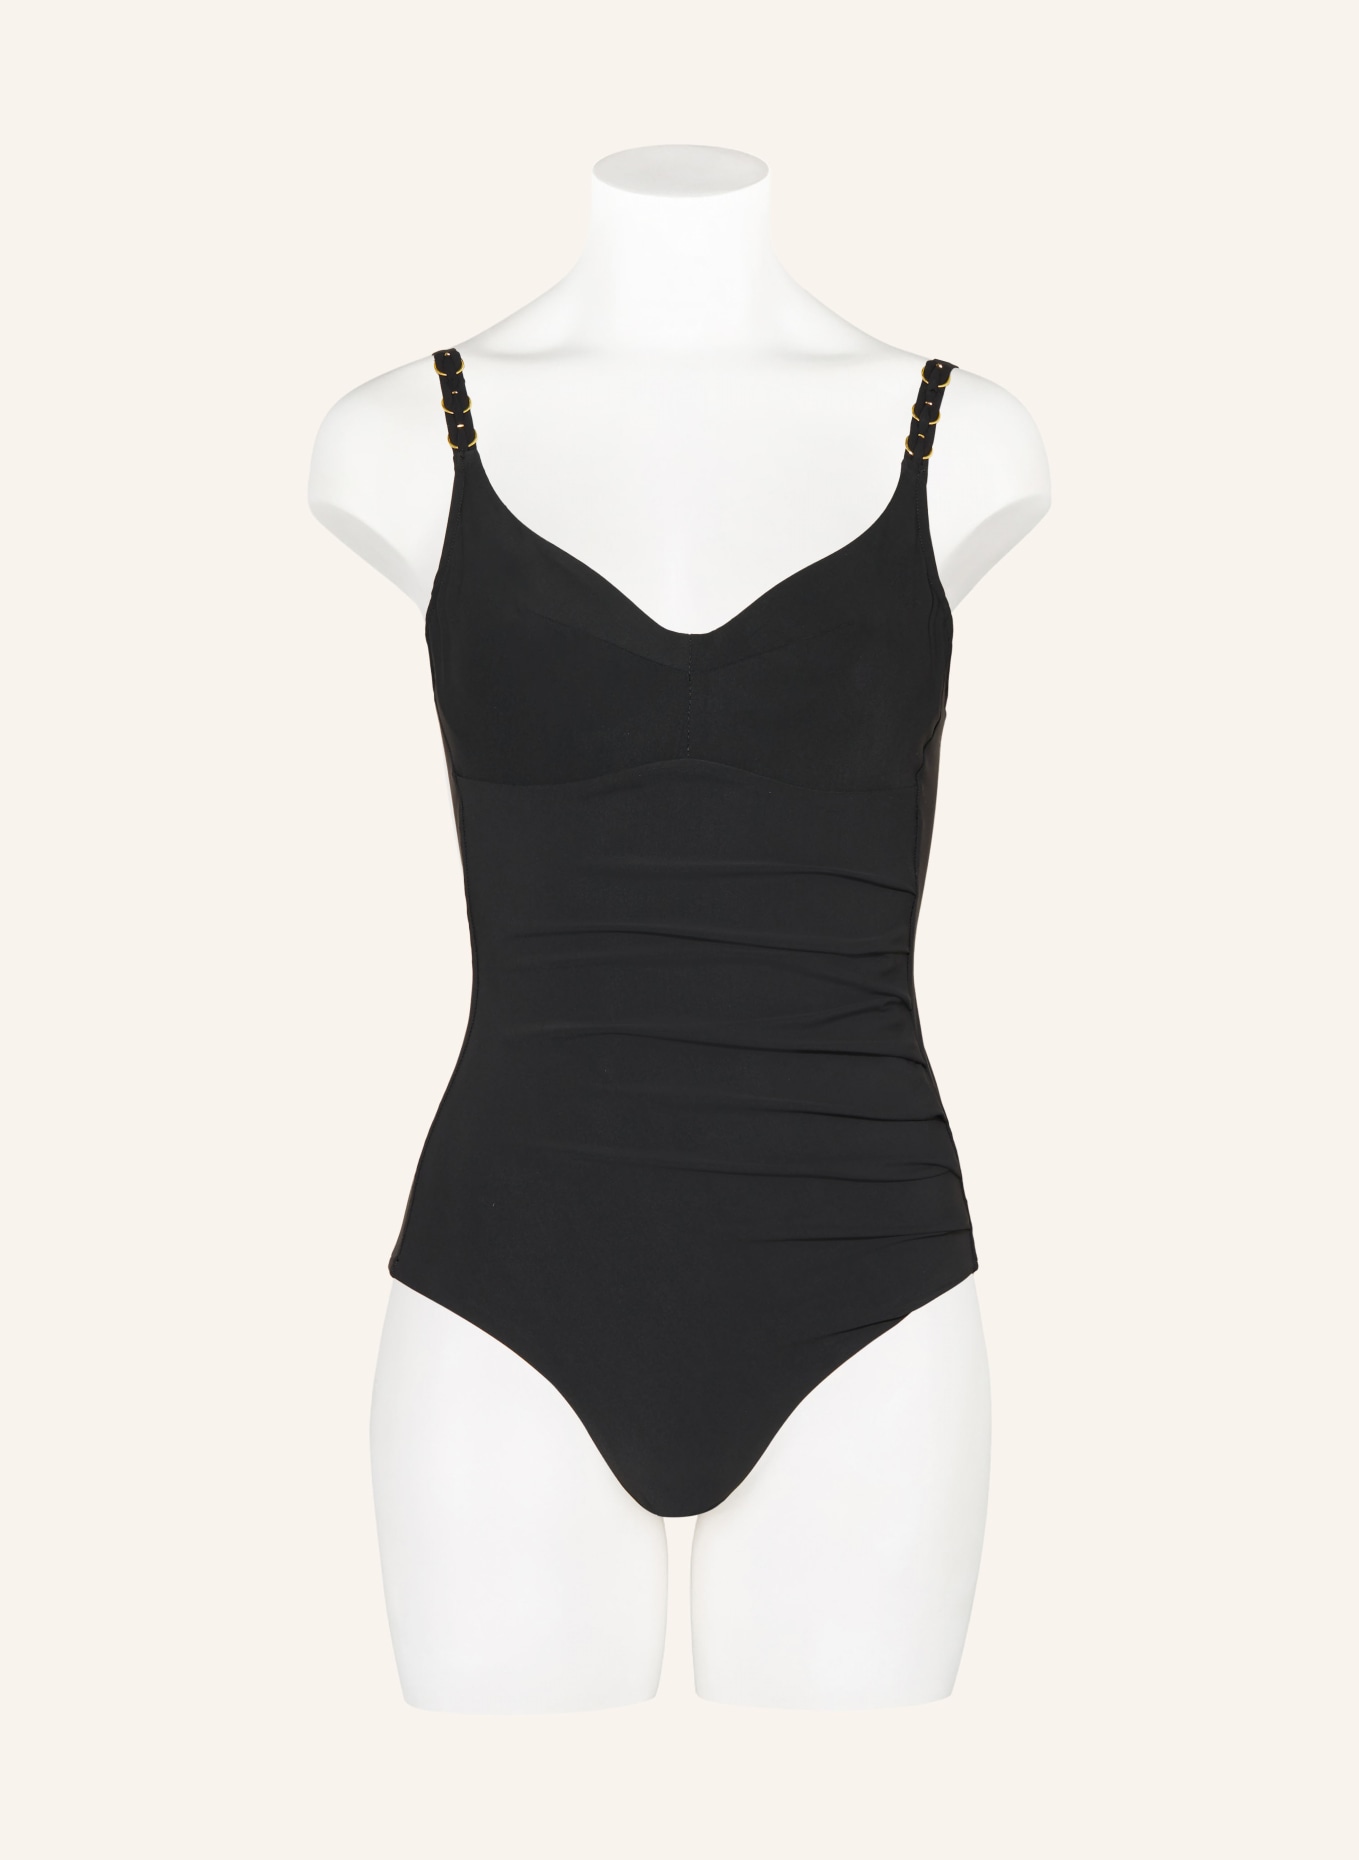 CHANTELLE Underwire swimsuit EMBLEM, Color: BLACK (Image 2)